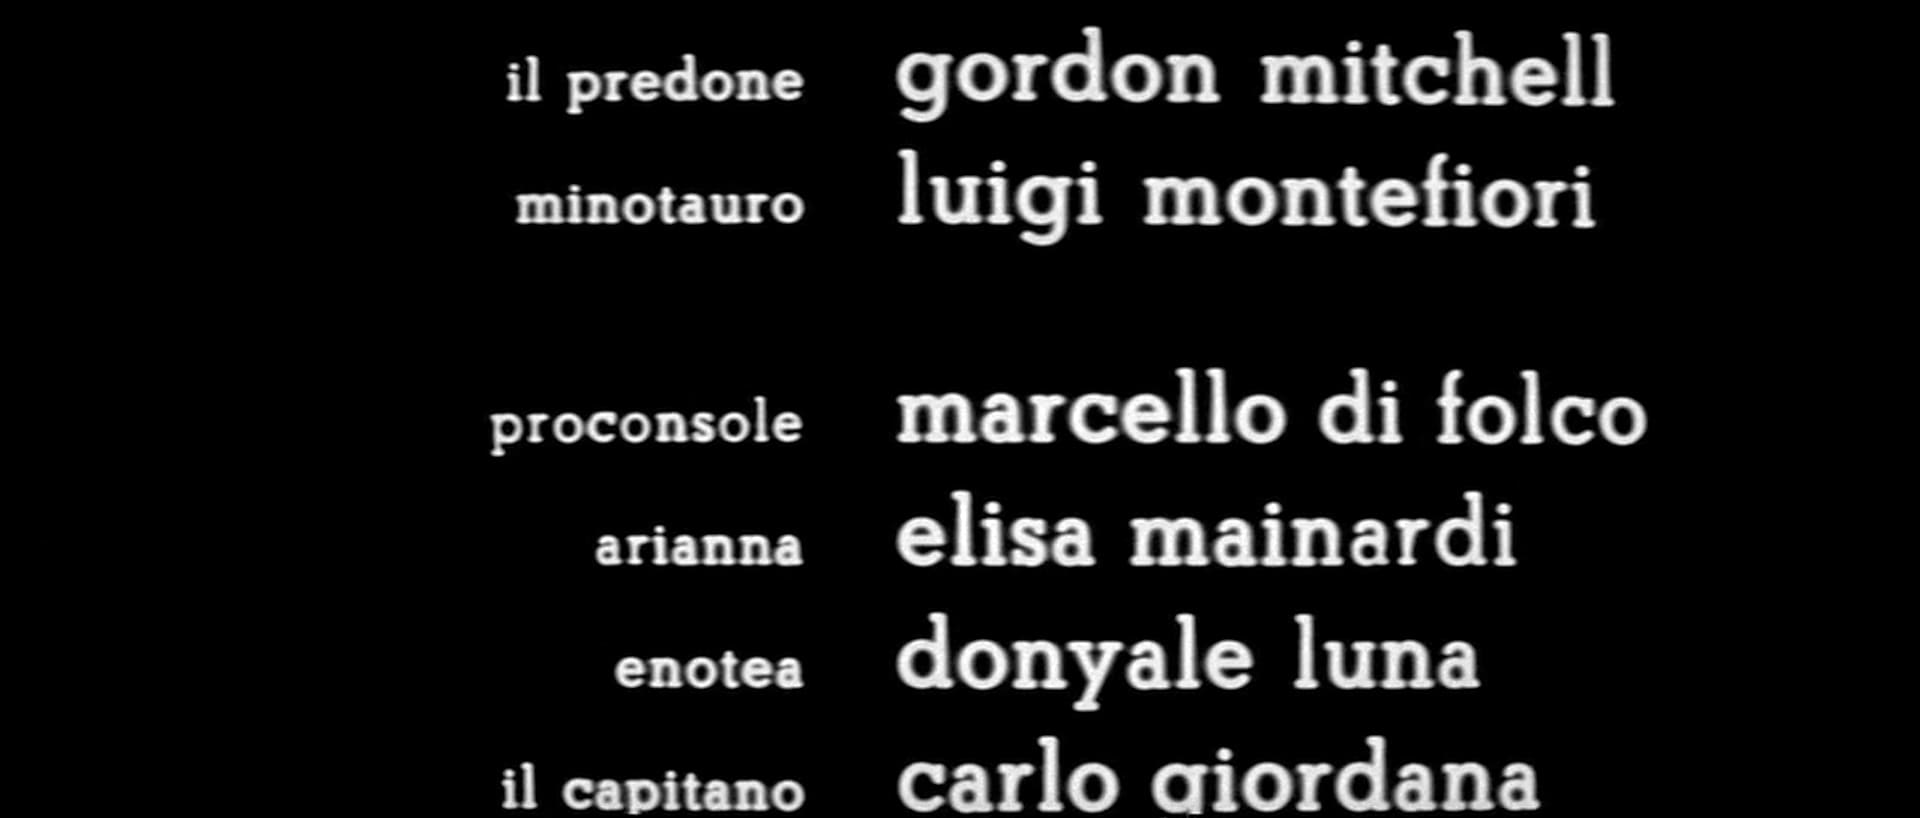 1969 _ Fellini Satyricon _ Proconsole _ Accreditato Come Marcello Di Folco _ 06.jpg